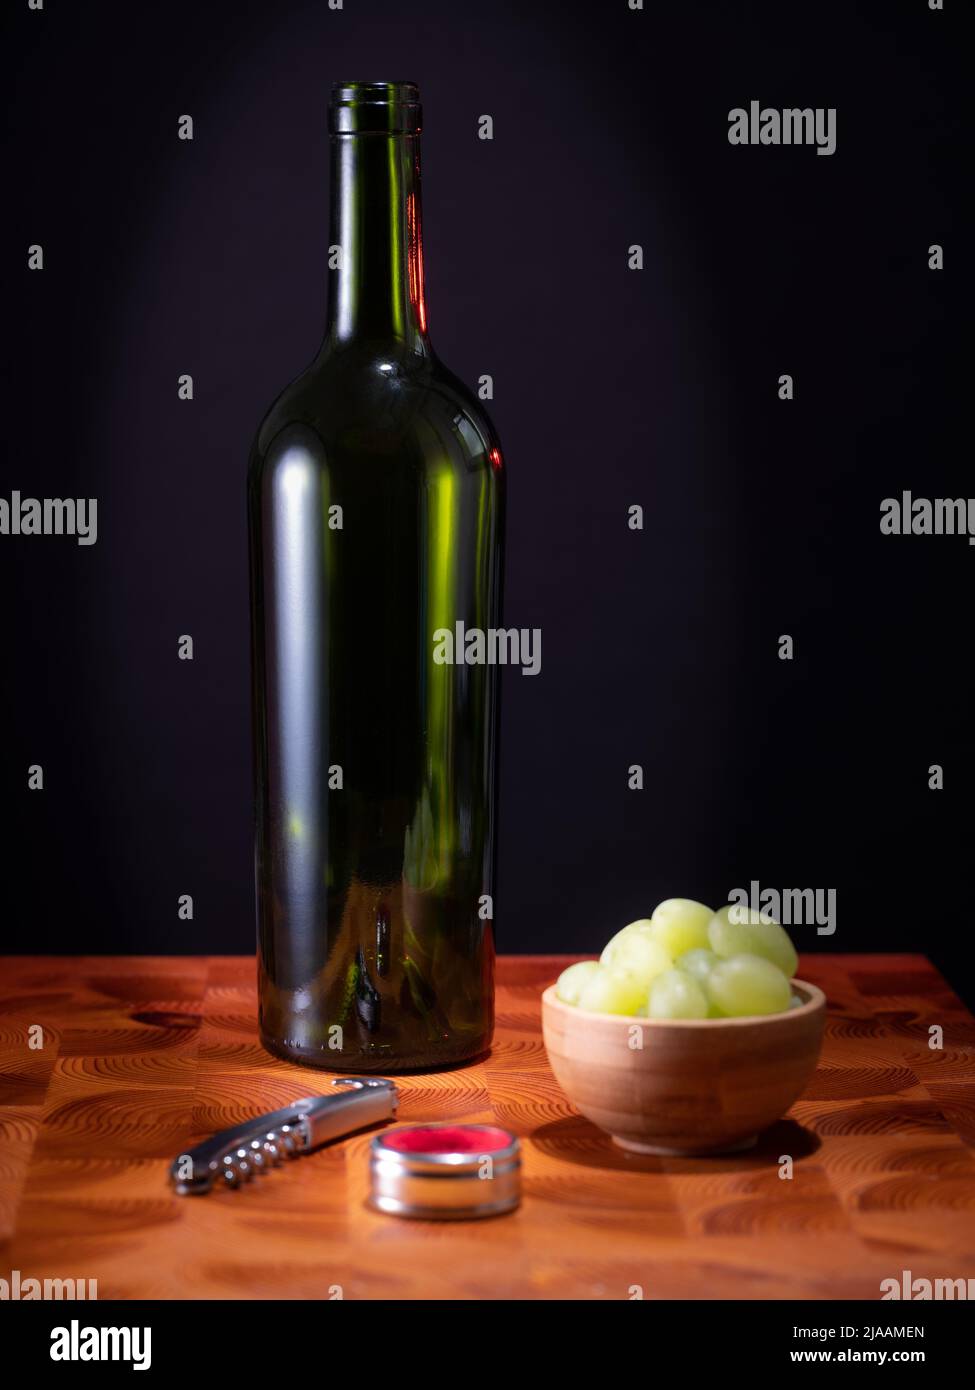 Helsinki / Finlande - 29 MAI 2022 : une bouteille de vin rouge vide, un verre de vin et quelques raisins sur une surface en bois sur fond sombre. Banque D'Images